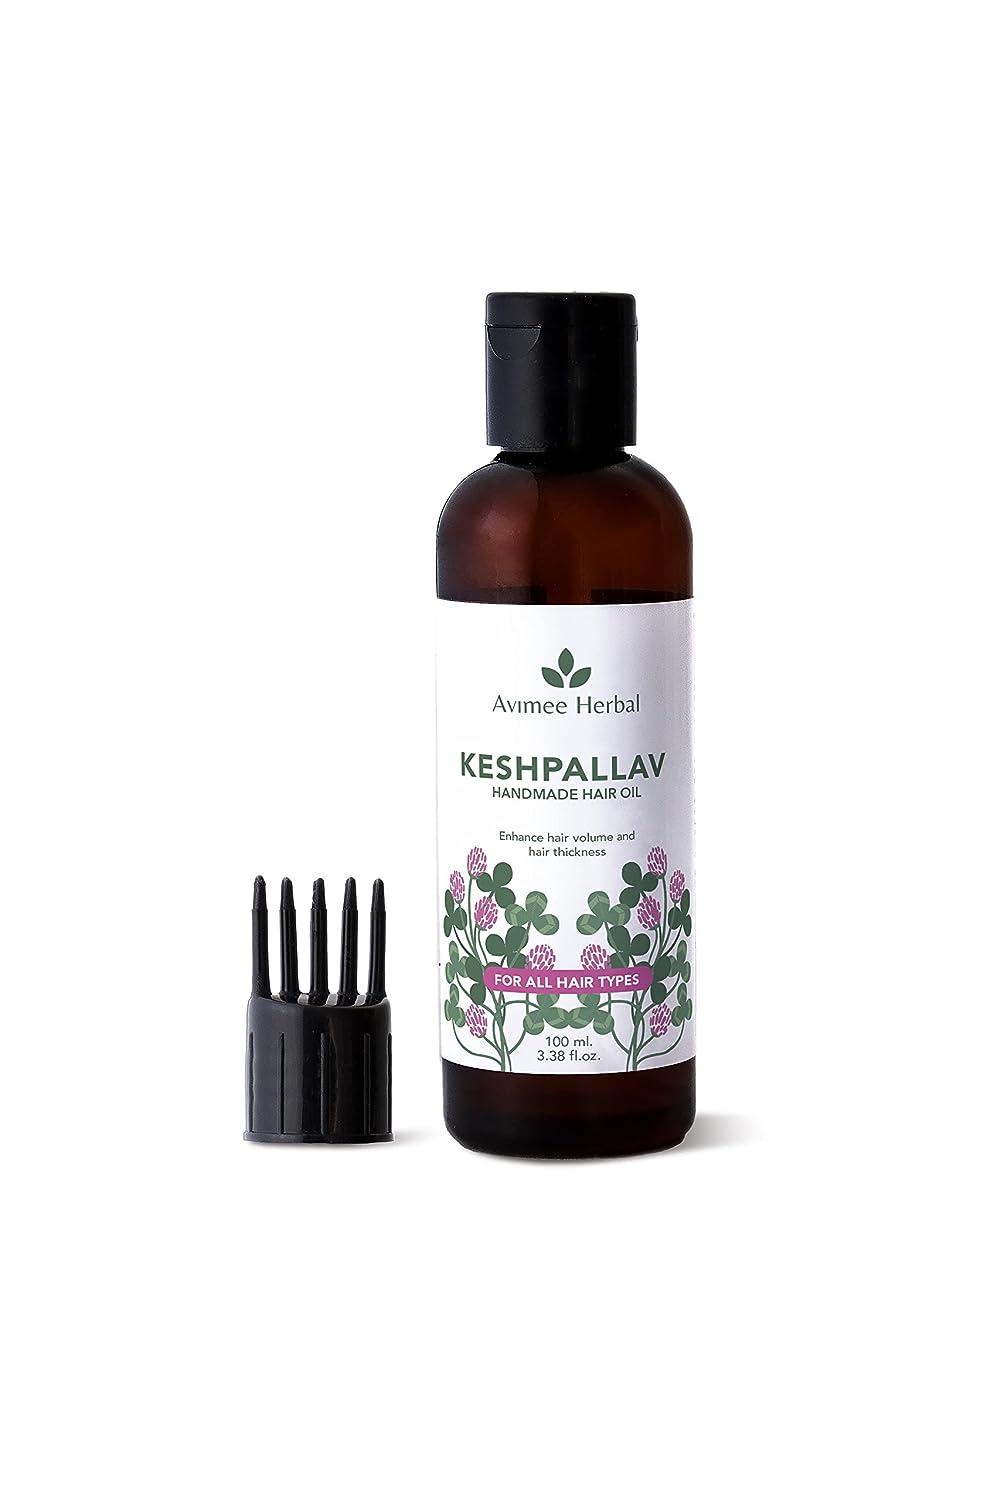 AVIMEE HERBAL Keshpallav Hair Oil Herbal Hair Growth Oil Reduces ...